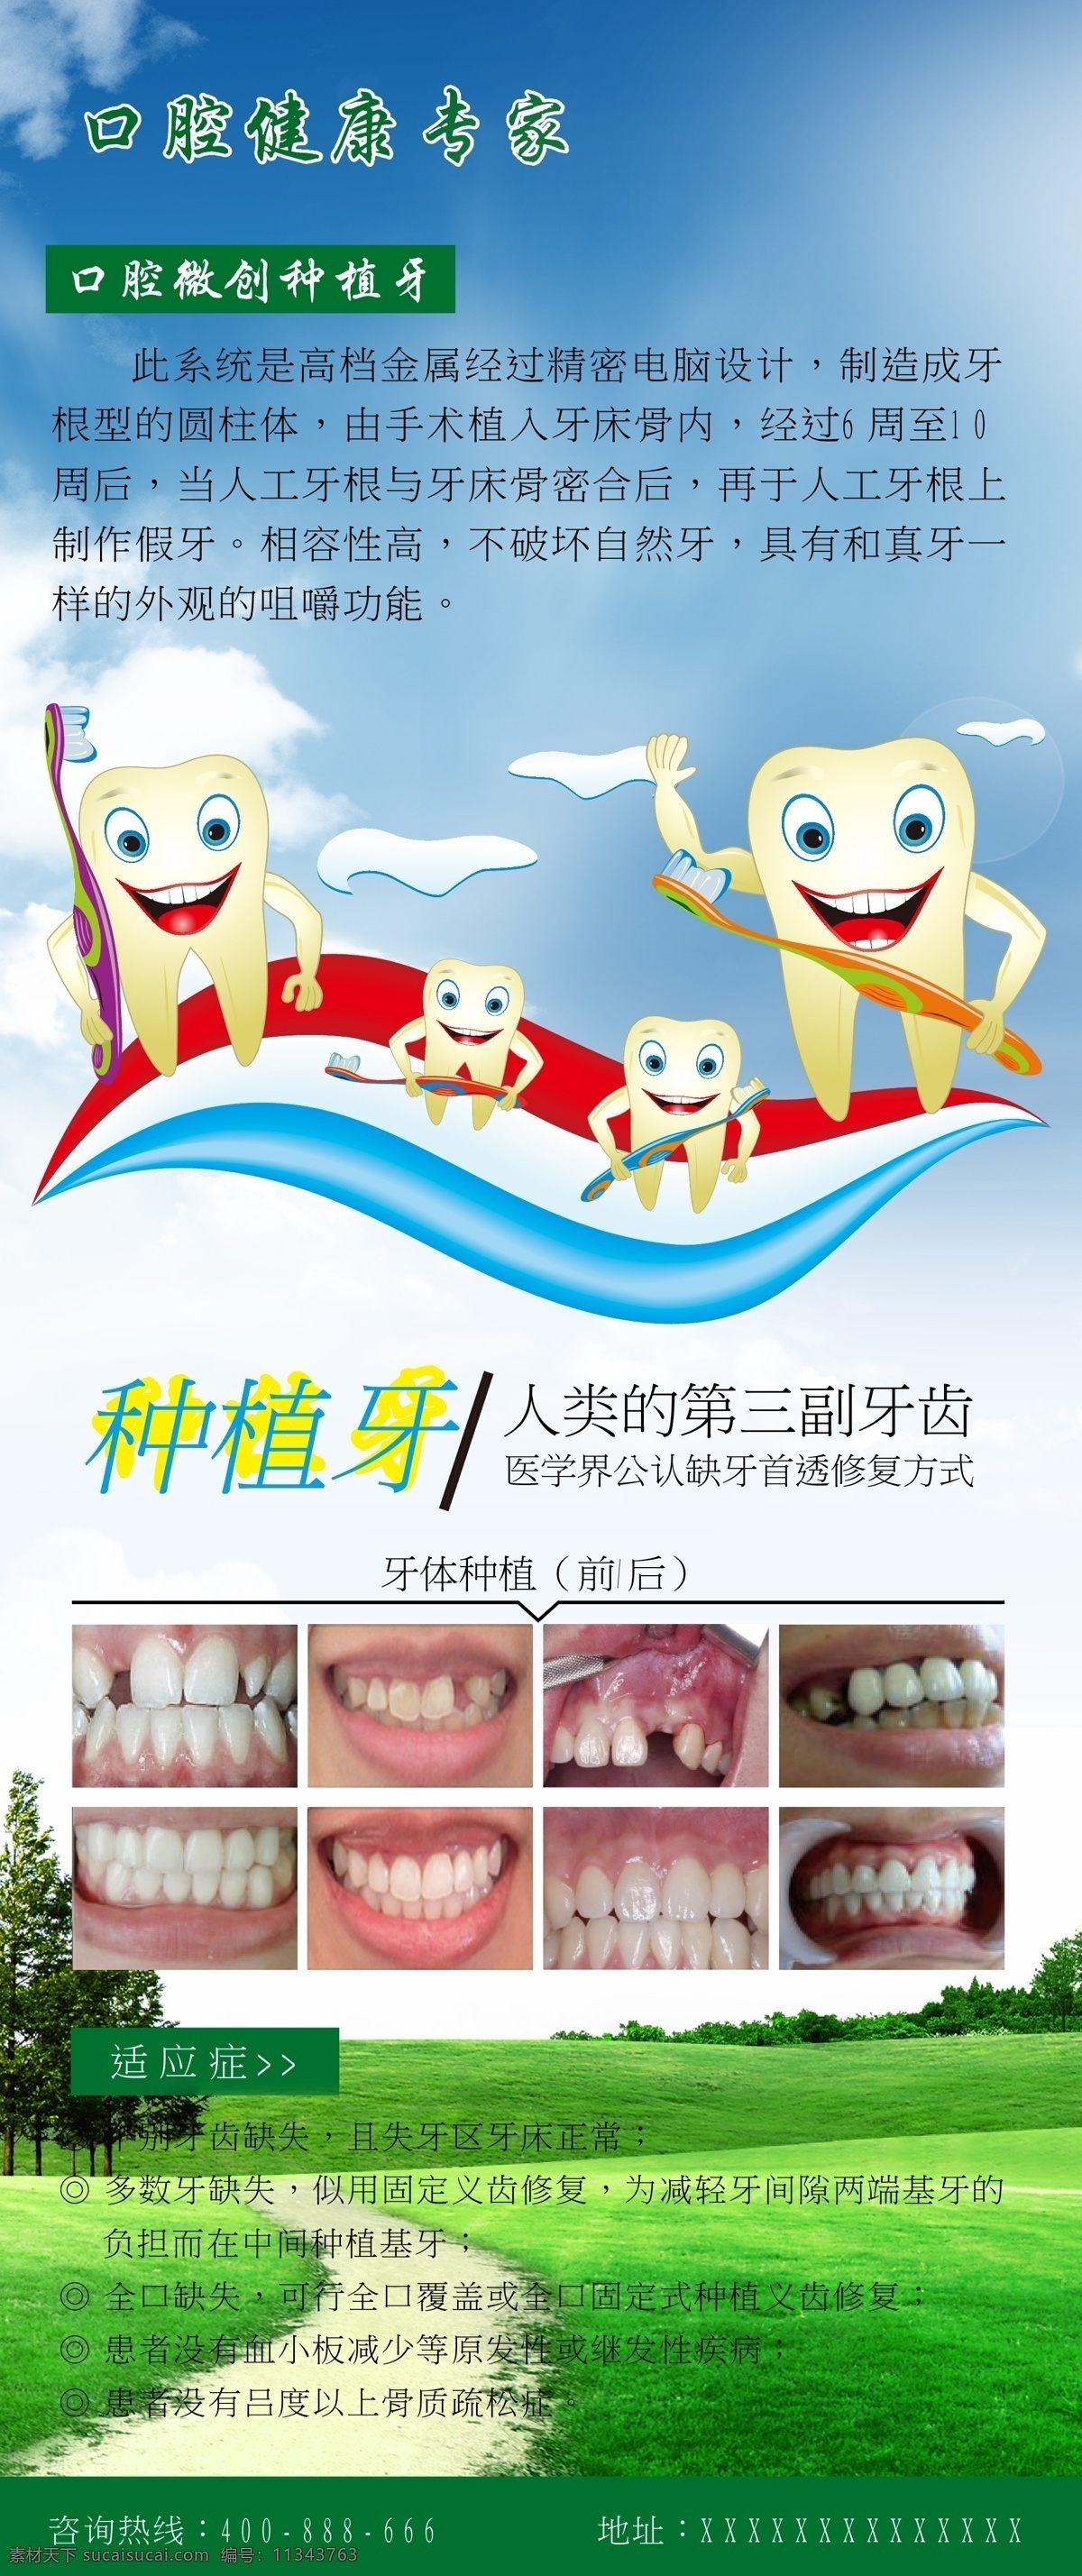 x展架 牙 牙齿 牙齿海报 易拉宝 种植牙 海报 矢量 模板下载 牙齿失量图 口腔专家 展板 x展板设计